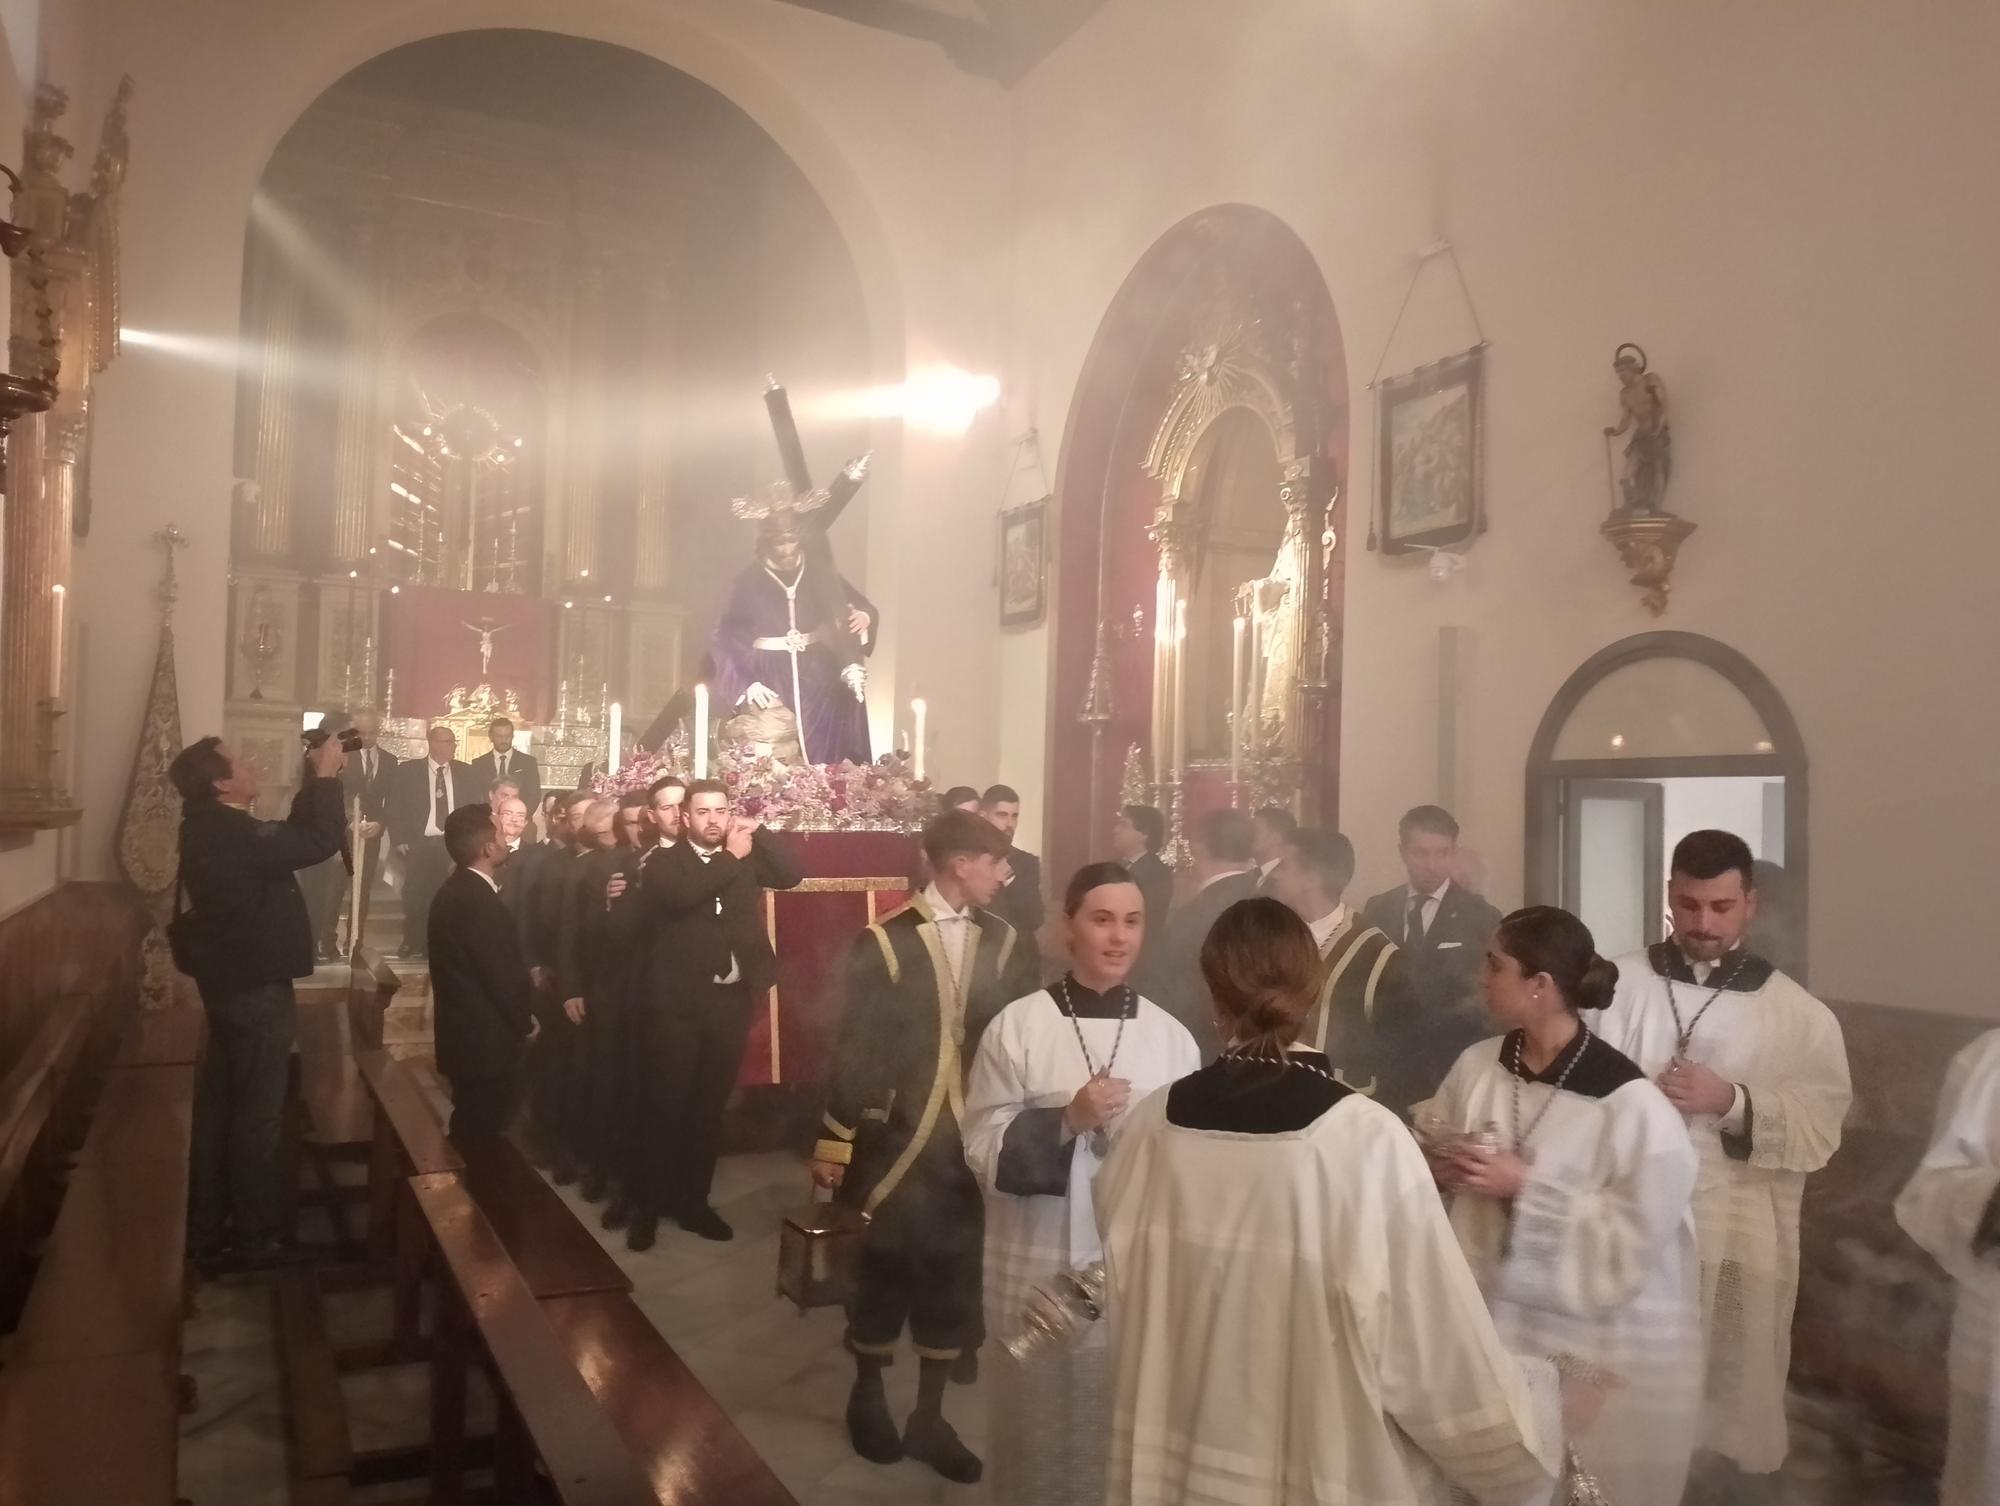 El Nazareno de los Pasos vuelve a presidir el vía crucis oficial de Málaga